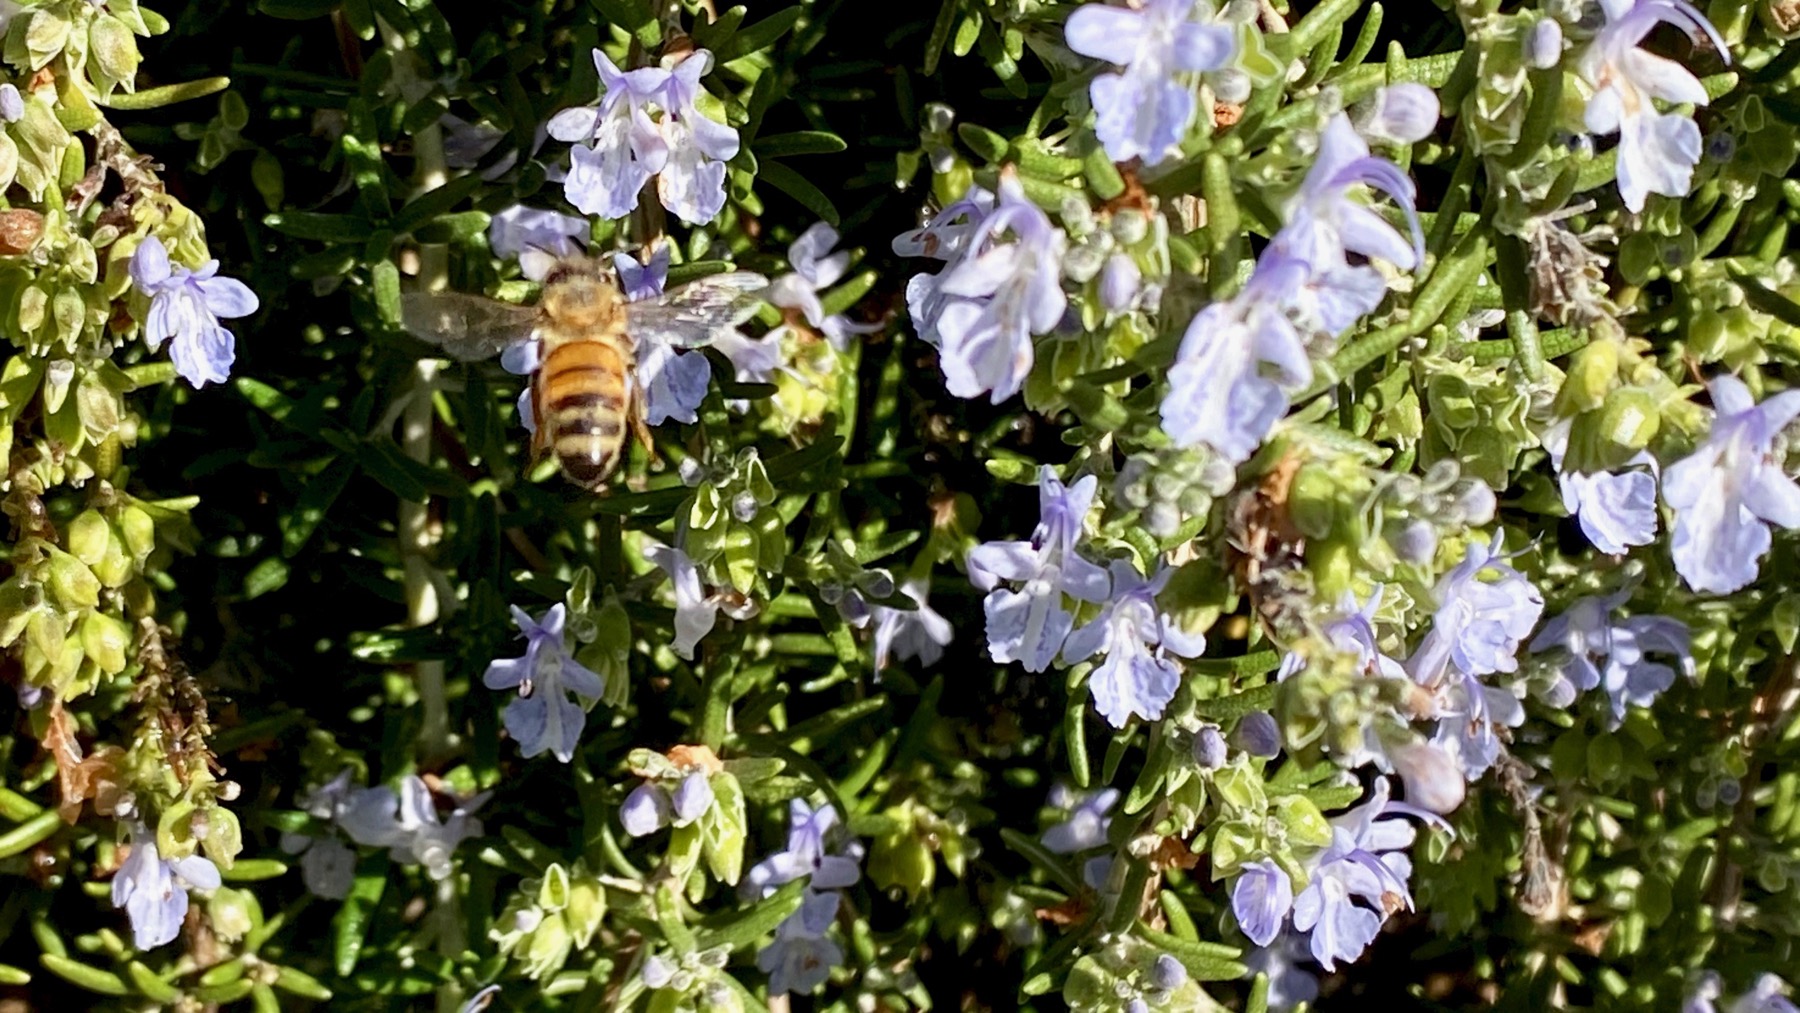 Rosemary bee